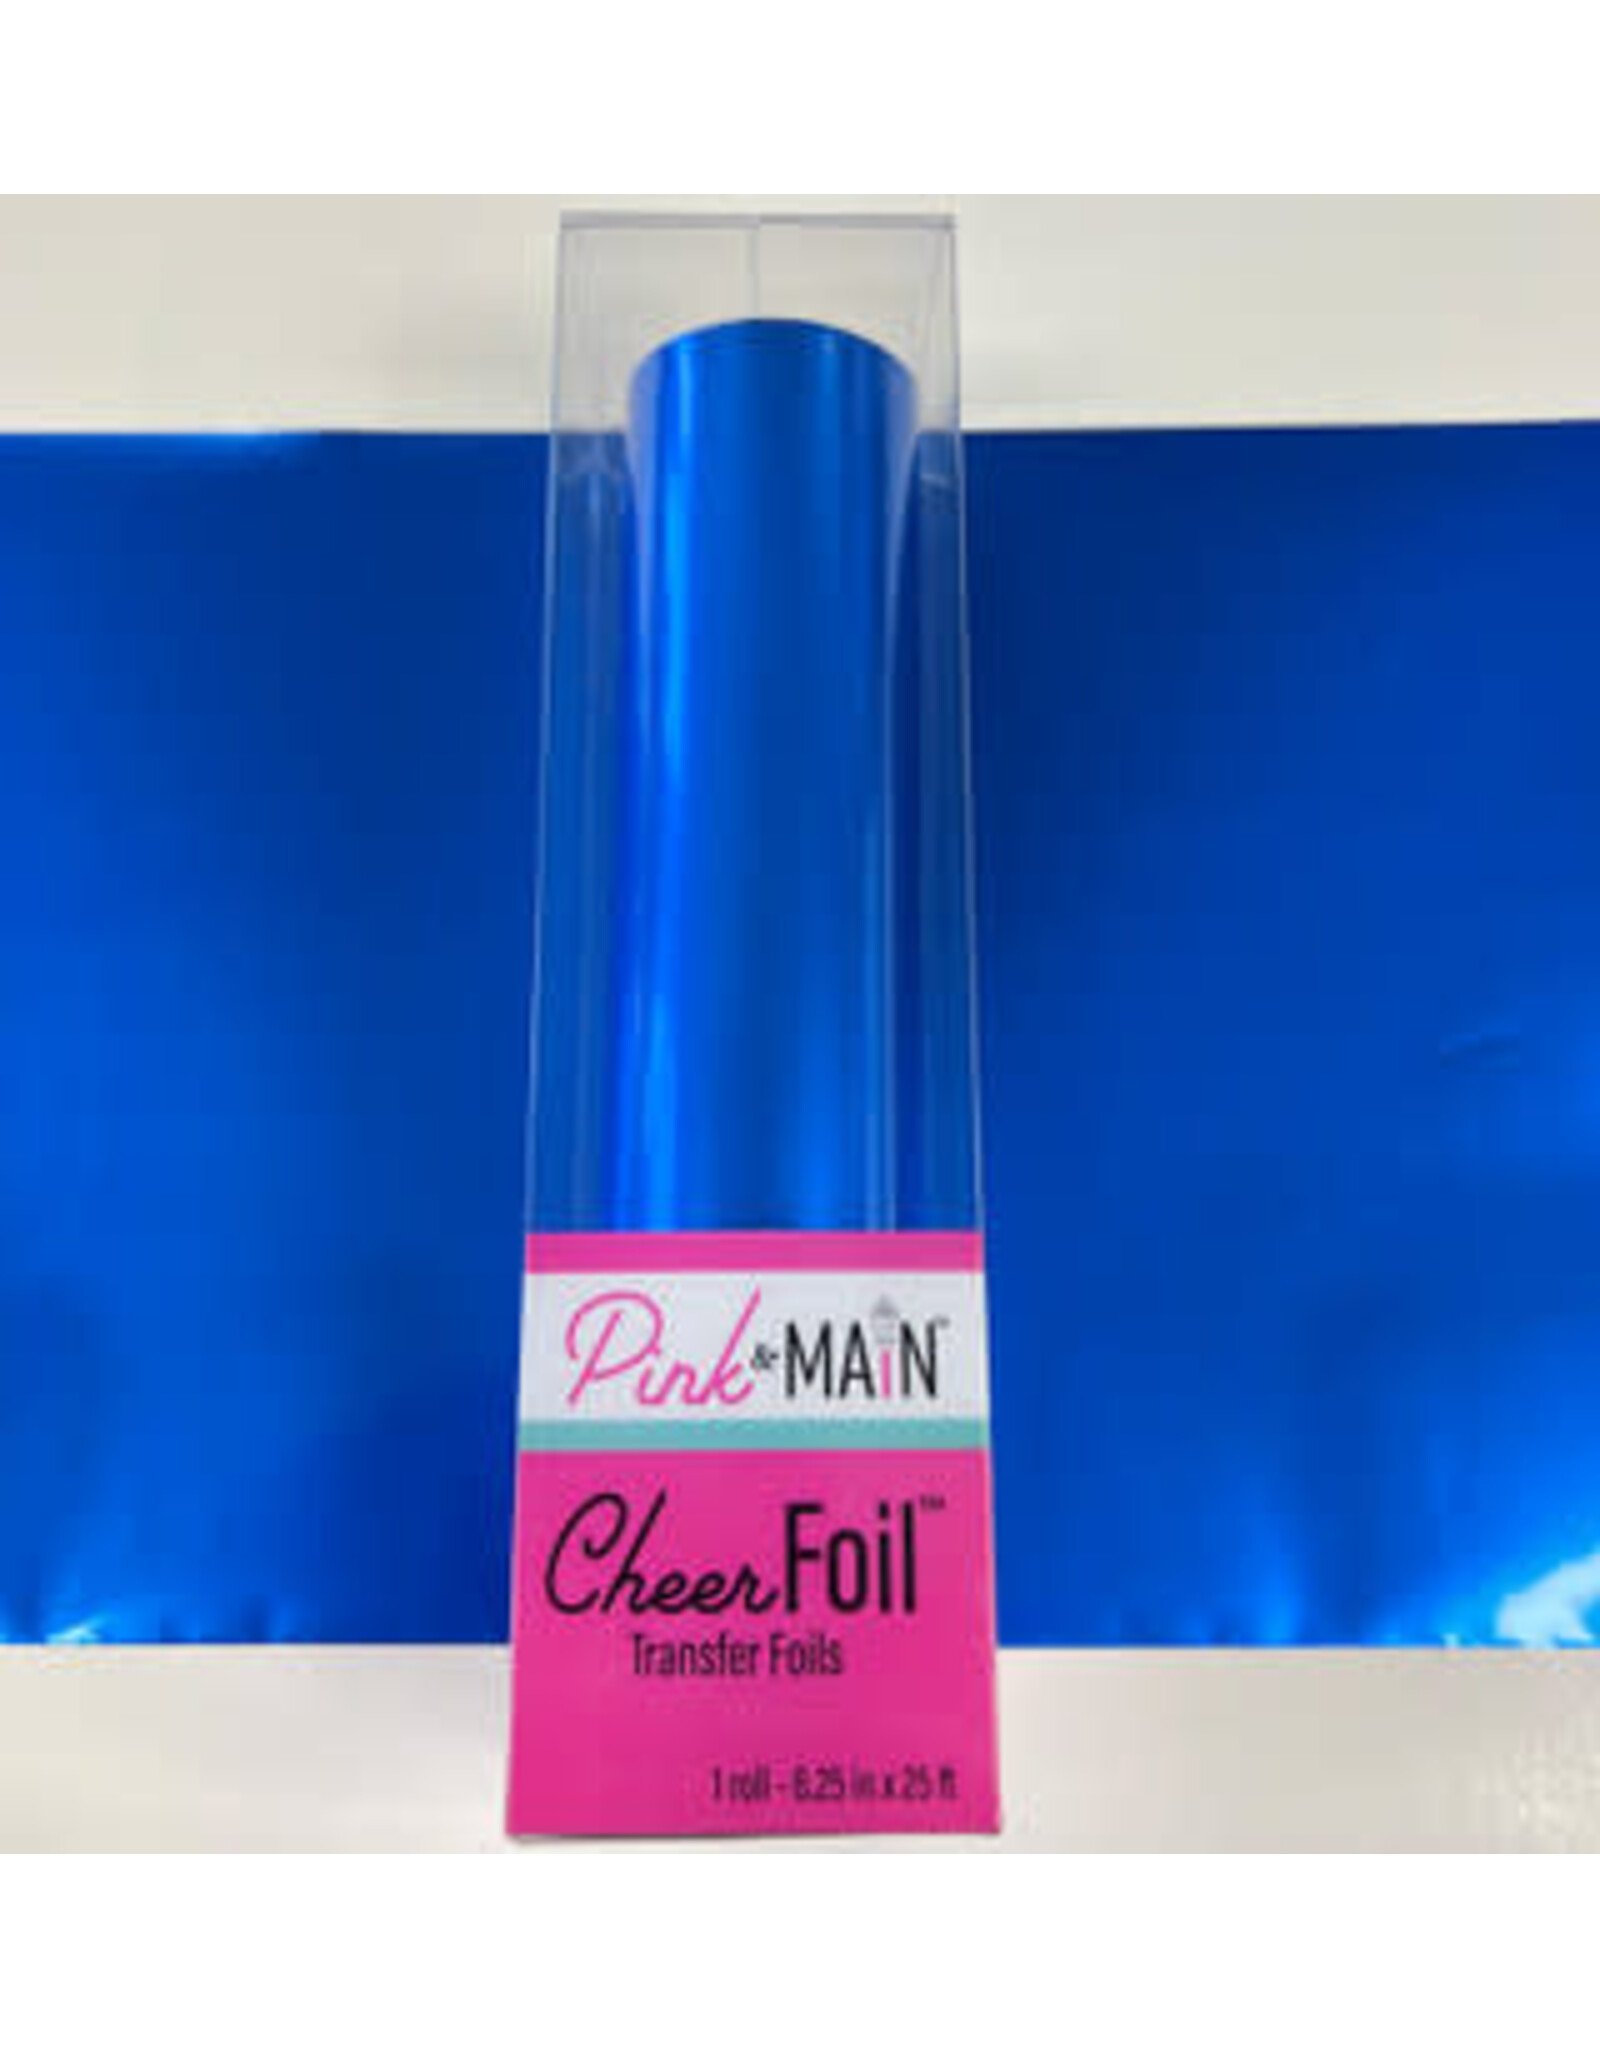 Pink & Main COBALT BLUE CHEERFOIL